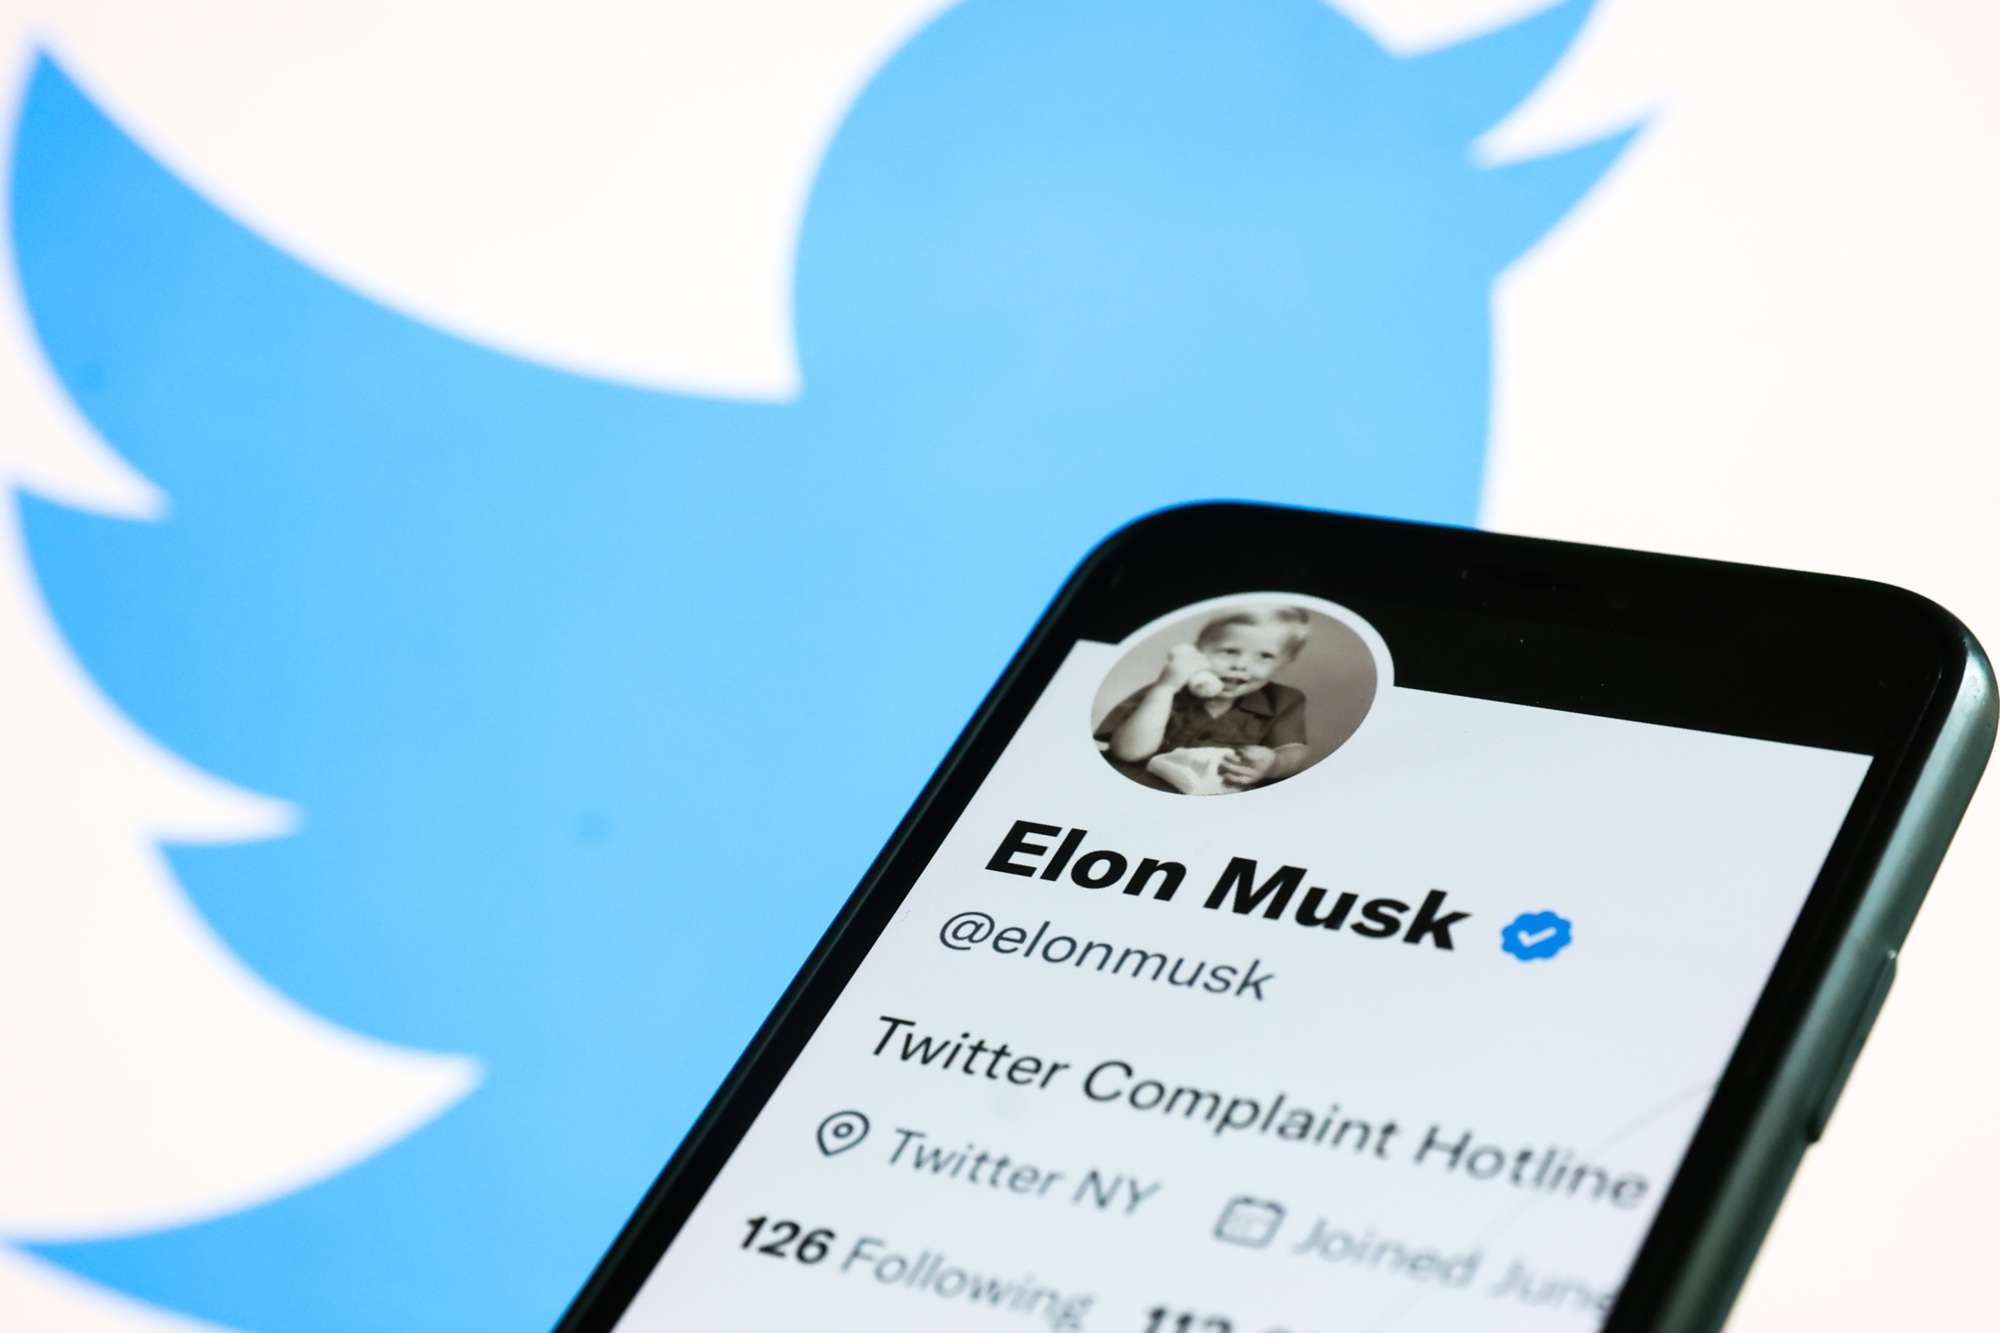 Elon Musk Announces Plans For Paid Twitter Verification